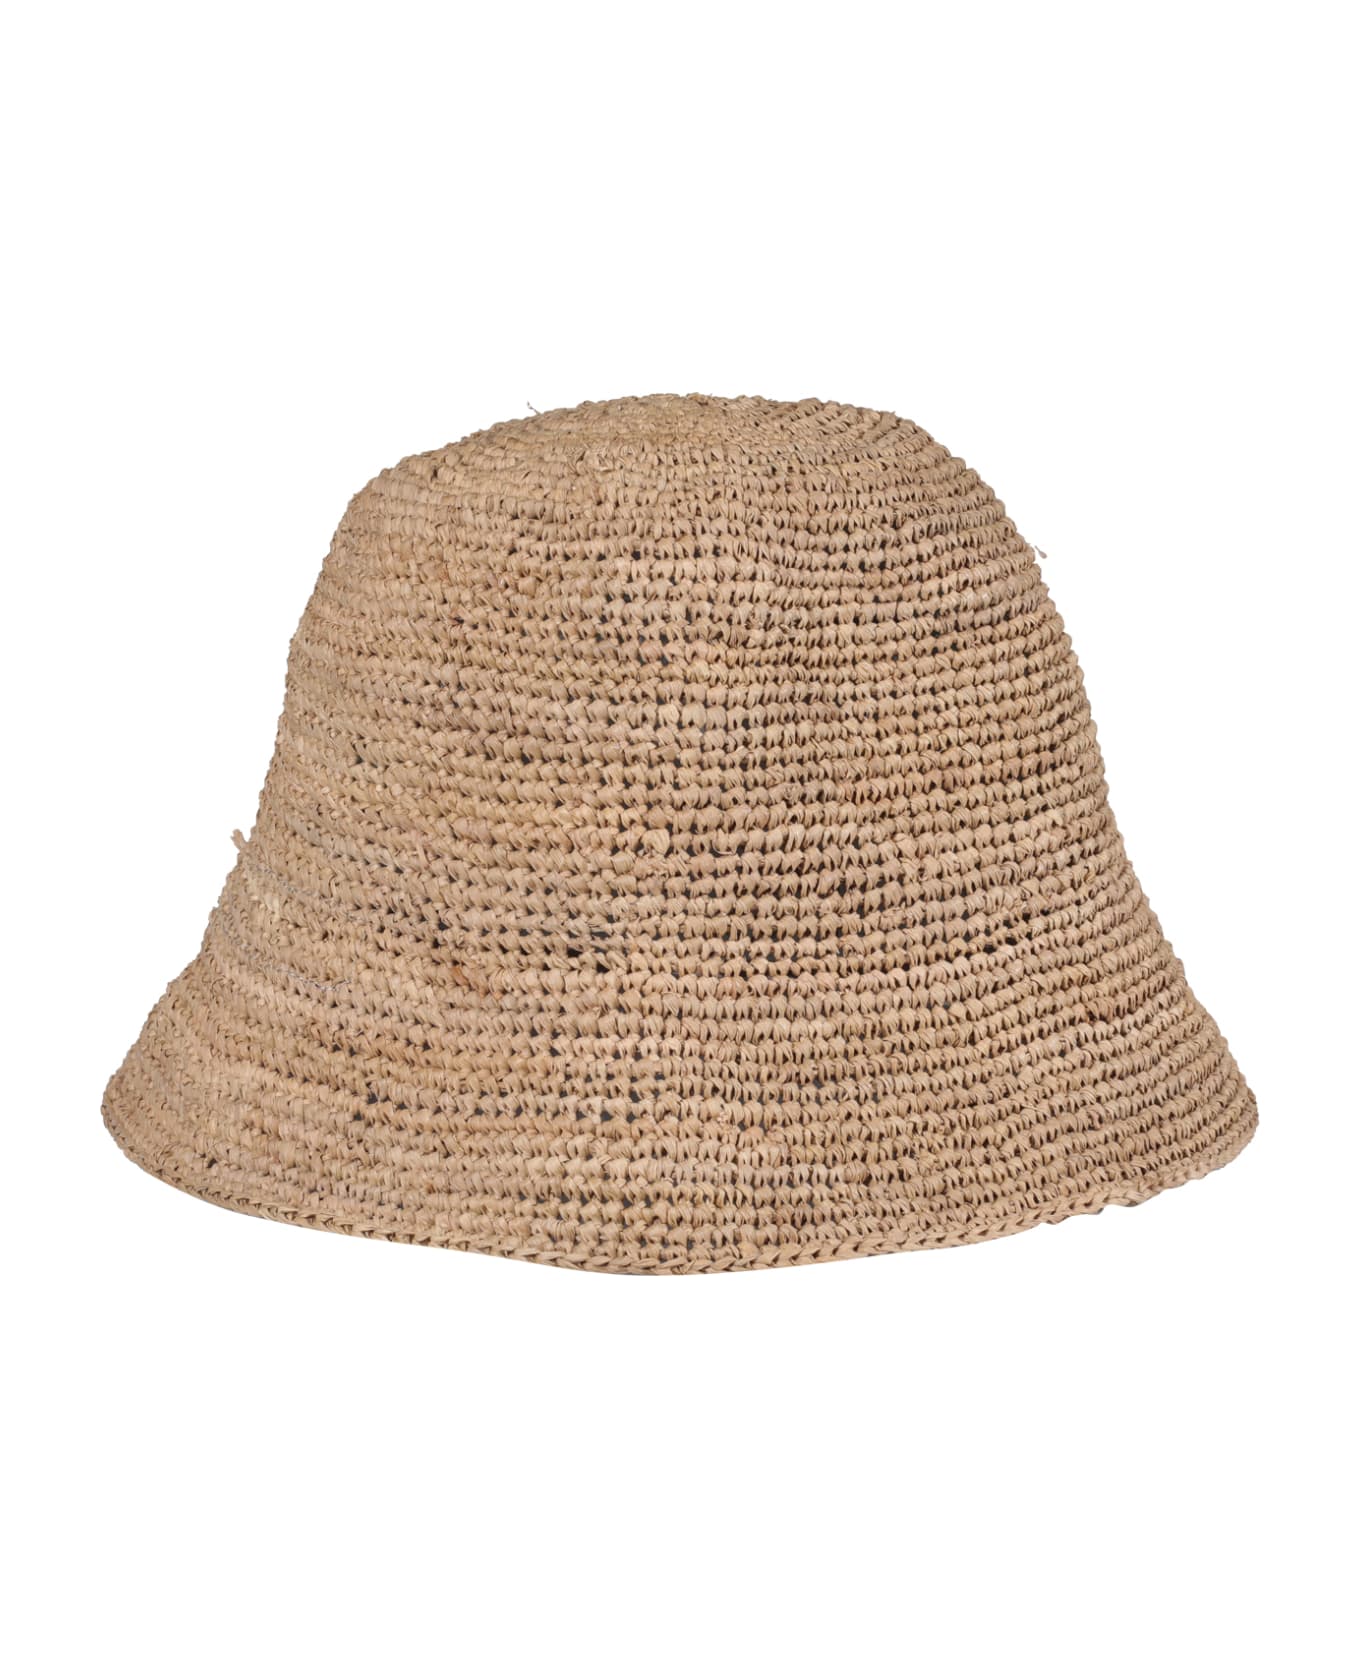 Ibeliv Andao Hat - Tea 帽子